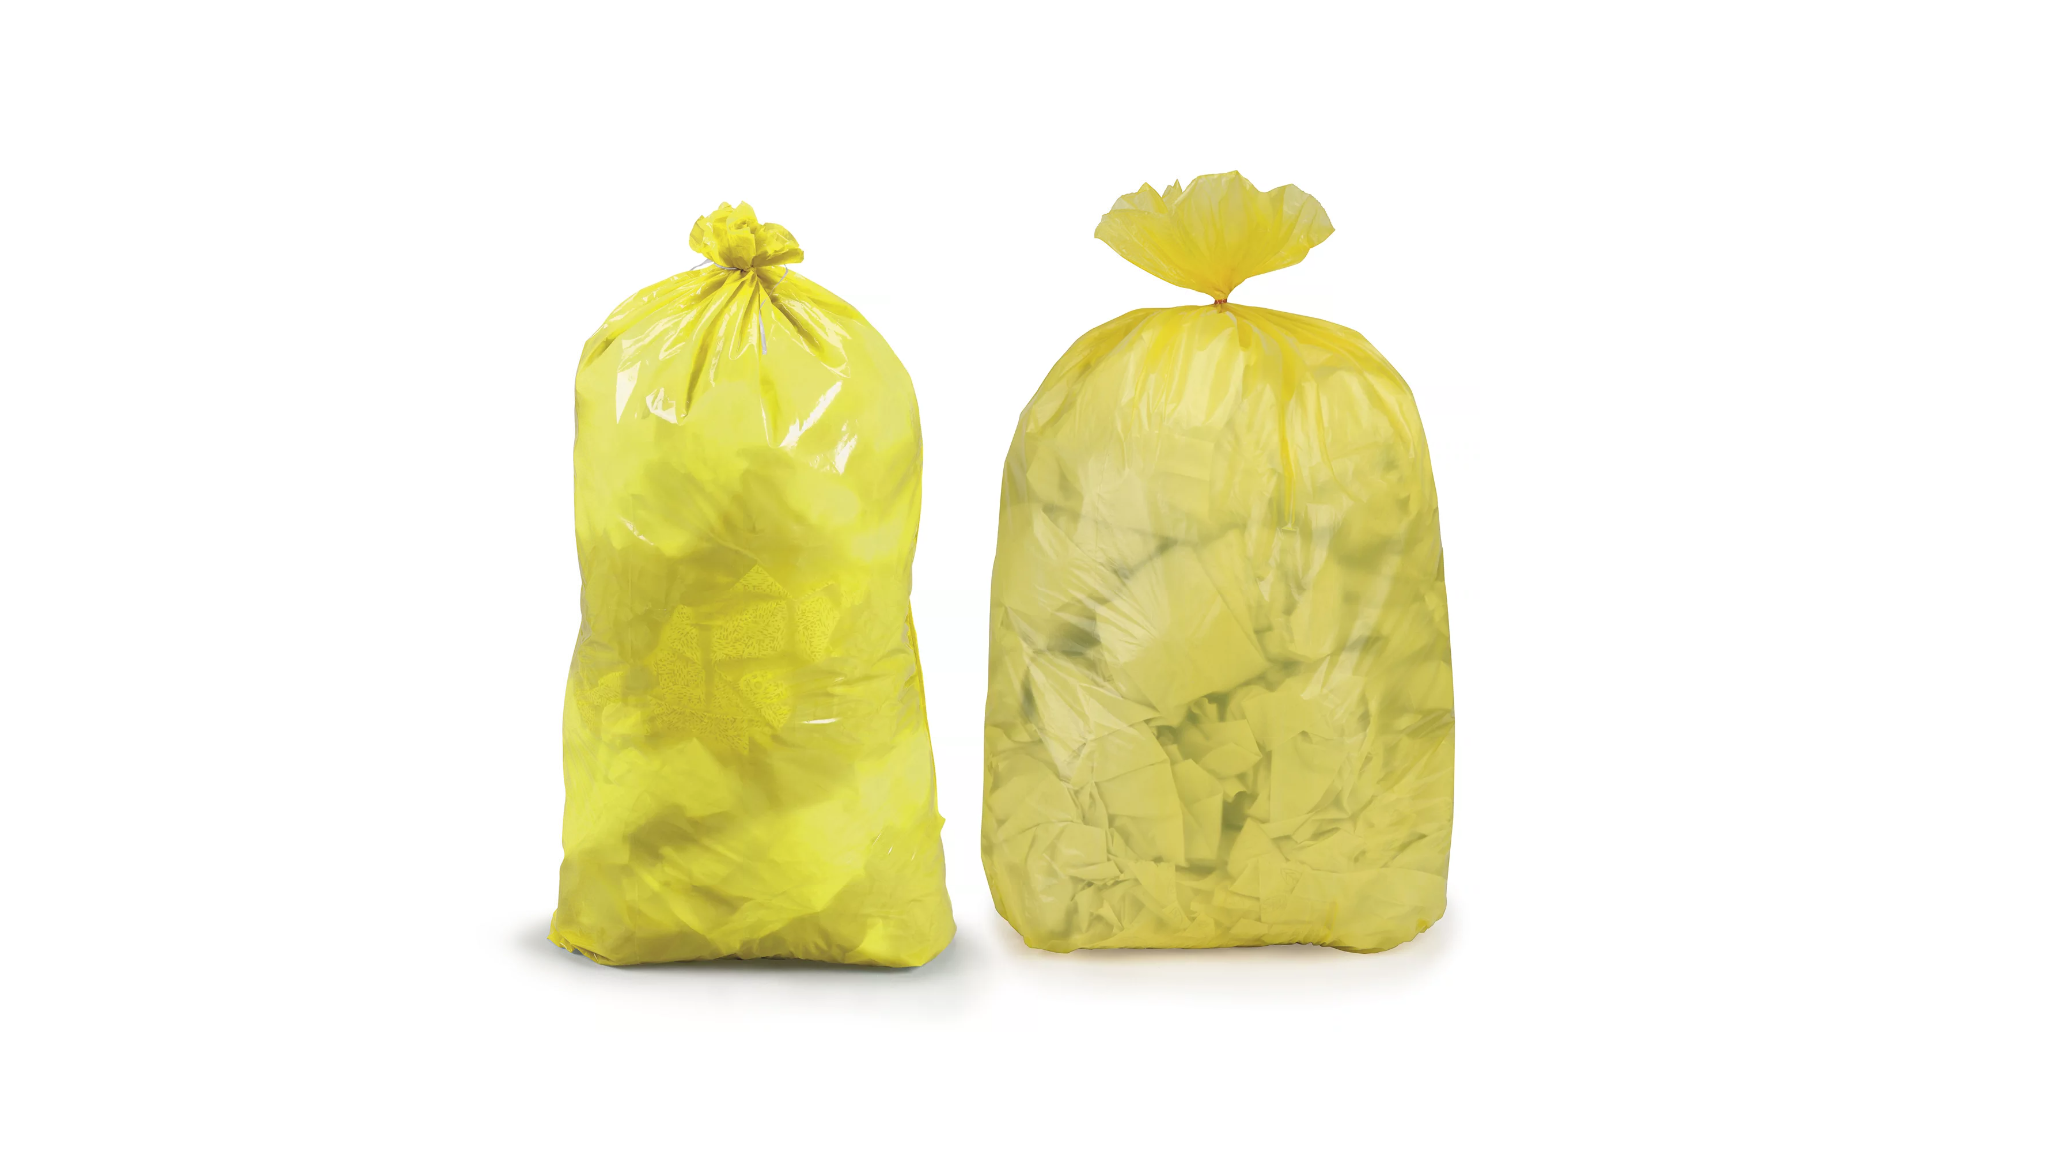 Gele vuilzak voor selectieve afvalscheiding